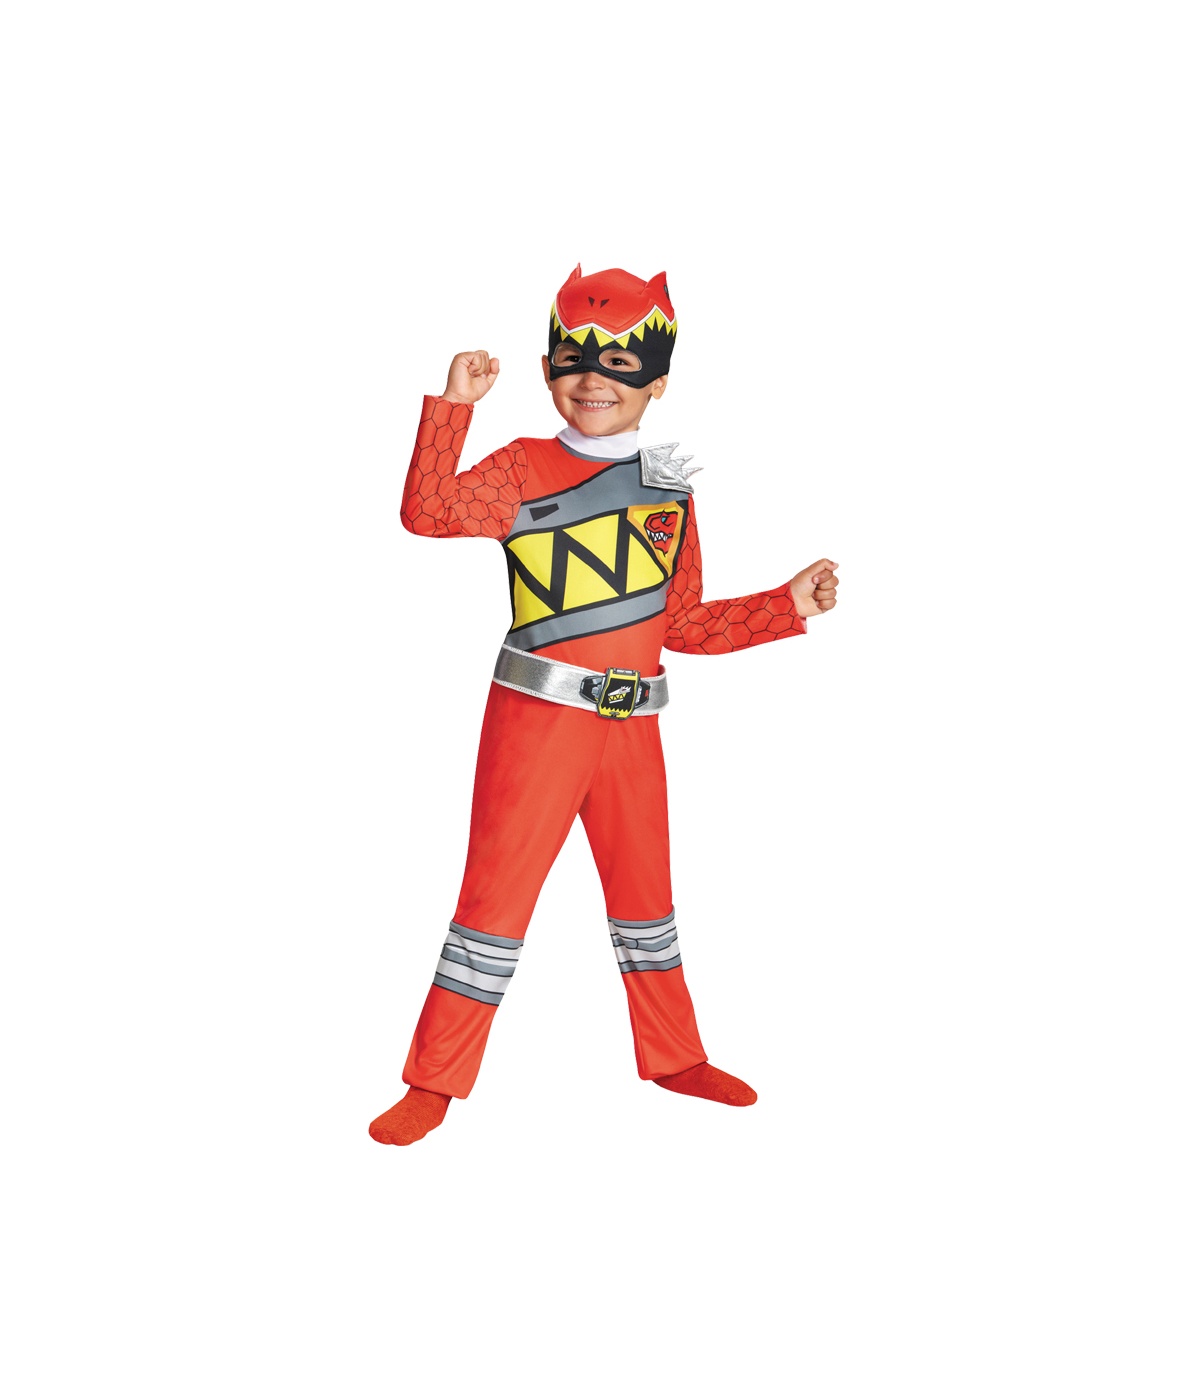  Boys Power Ranger Costume